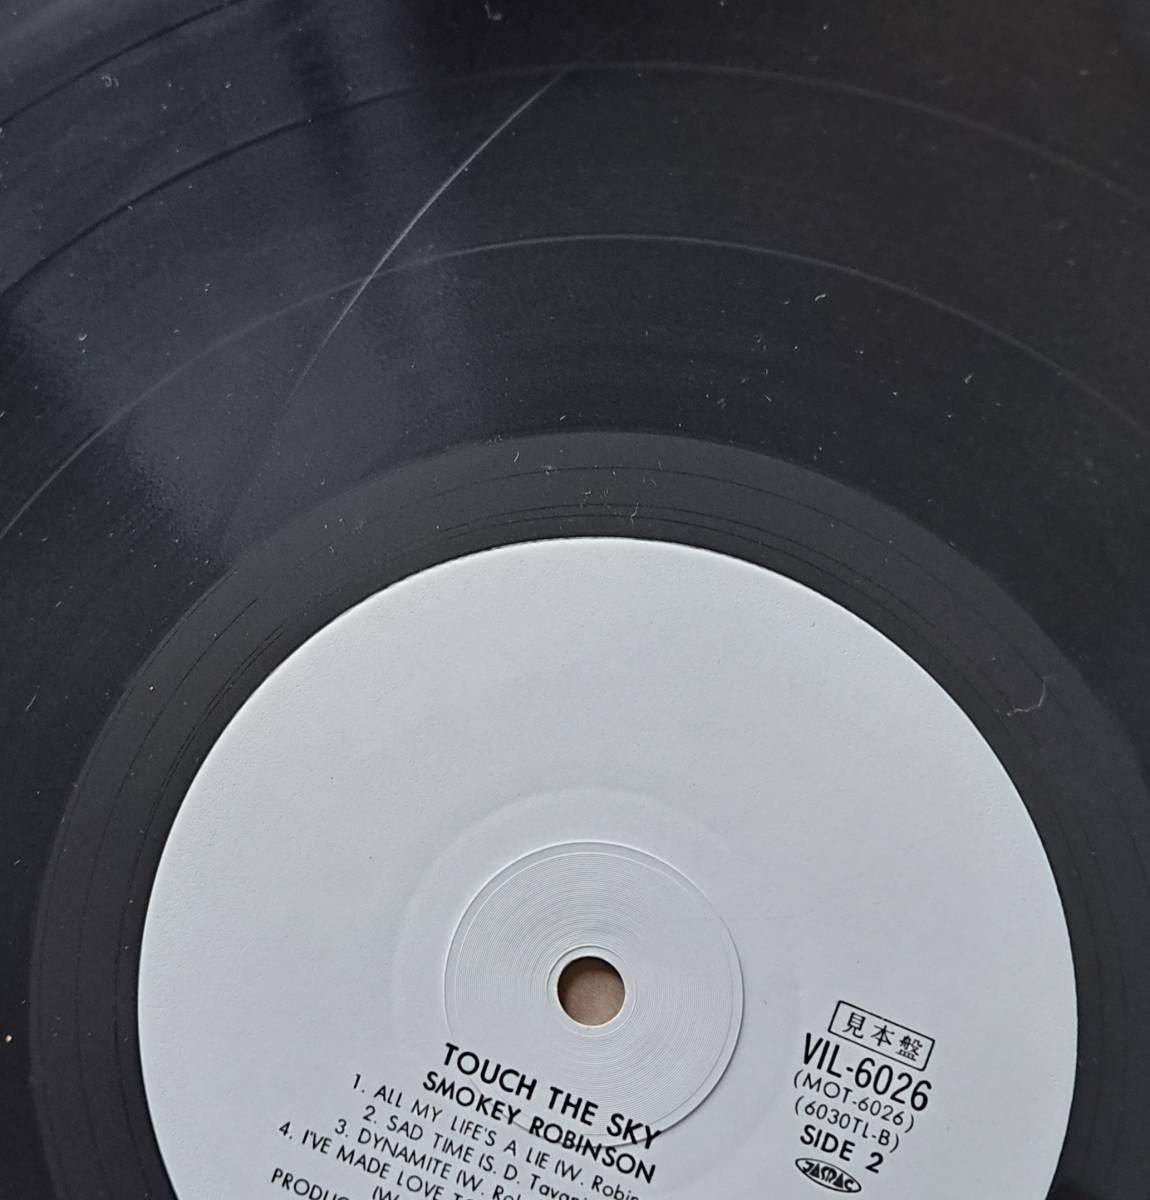 白盤・帯付LP◎スモーキー・ロビンソン『タッチ・ザ・スカイ』VIL-6026 Motown ビクター 1983年 Smokey Robinson 見本盤 ブラコン_スレあり(音跳びするようなキズは無し)